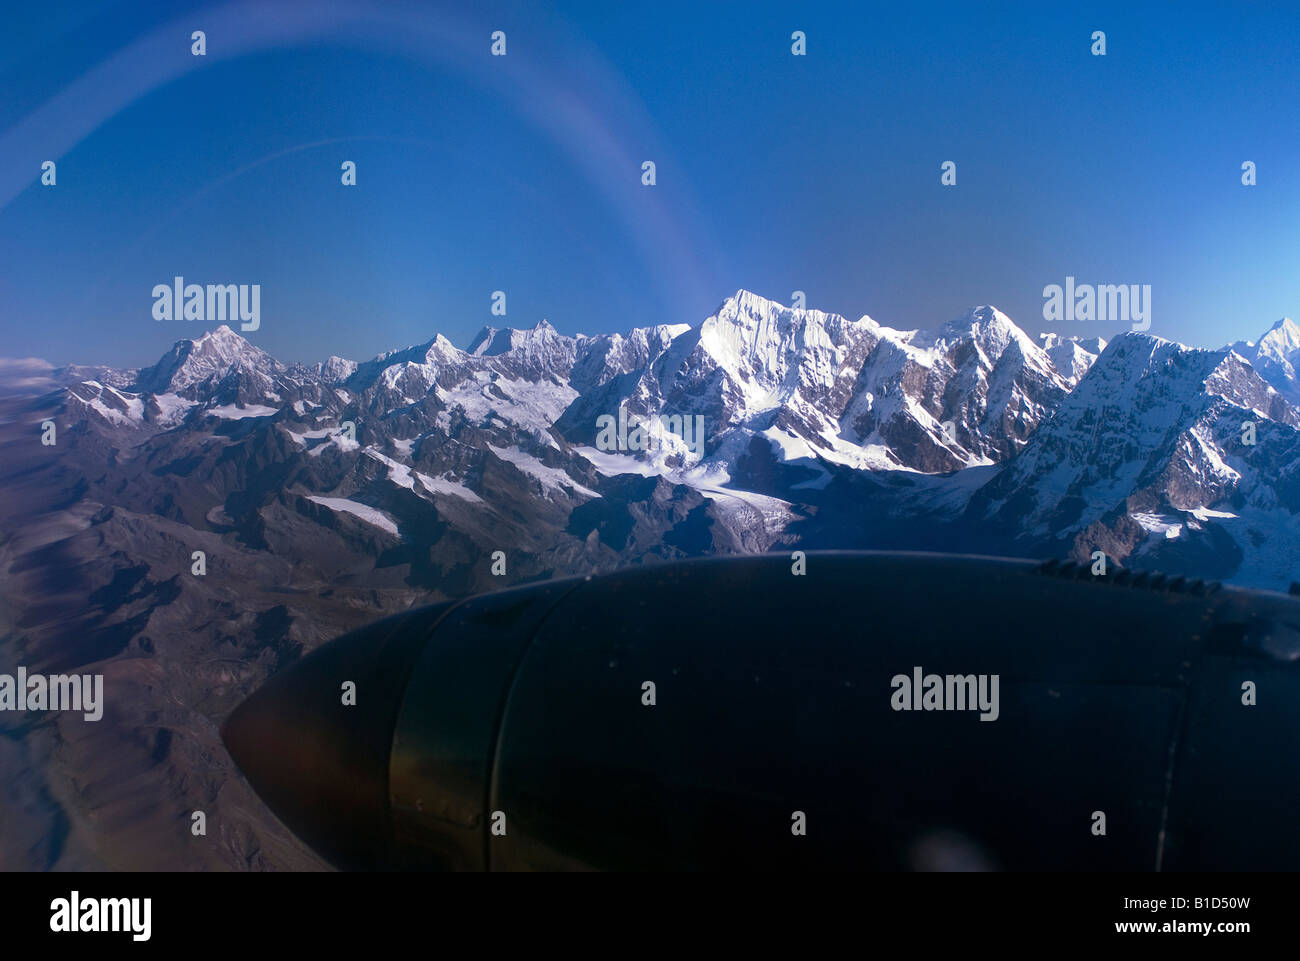 Könige des Himalaya-Gebirges, Nuptse, Mount Everest und Lhotse, vom Flugzeug aus gesehen Stockfoto